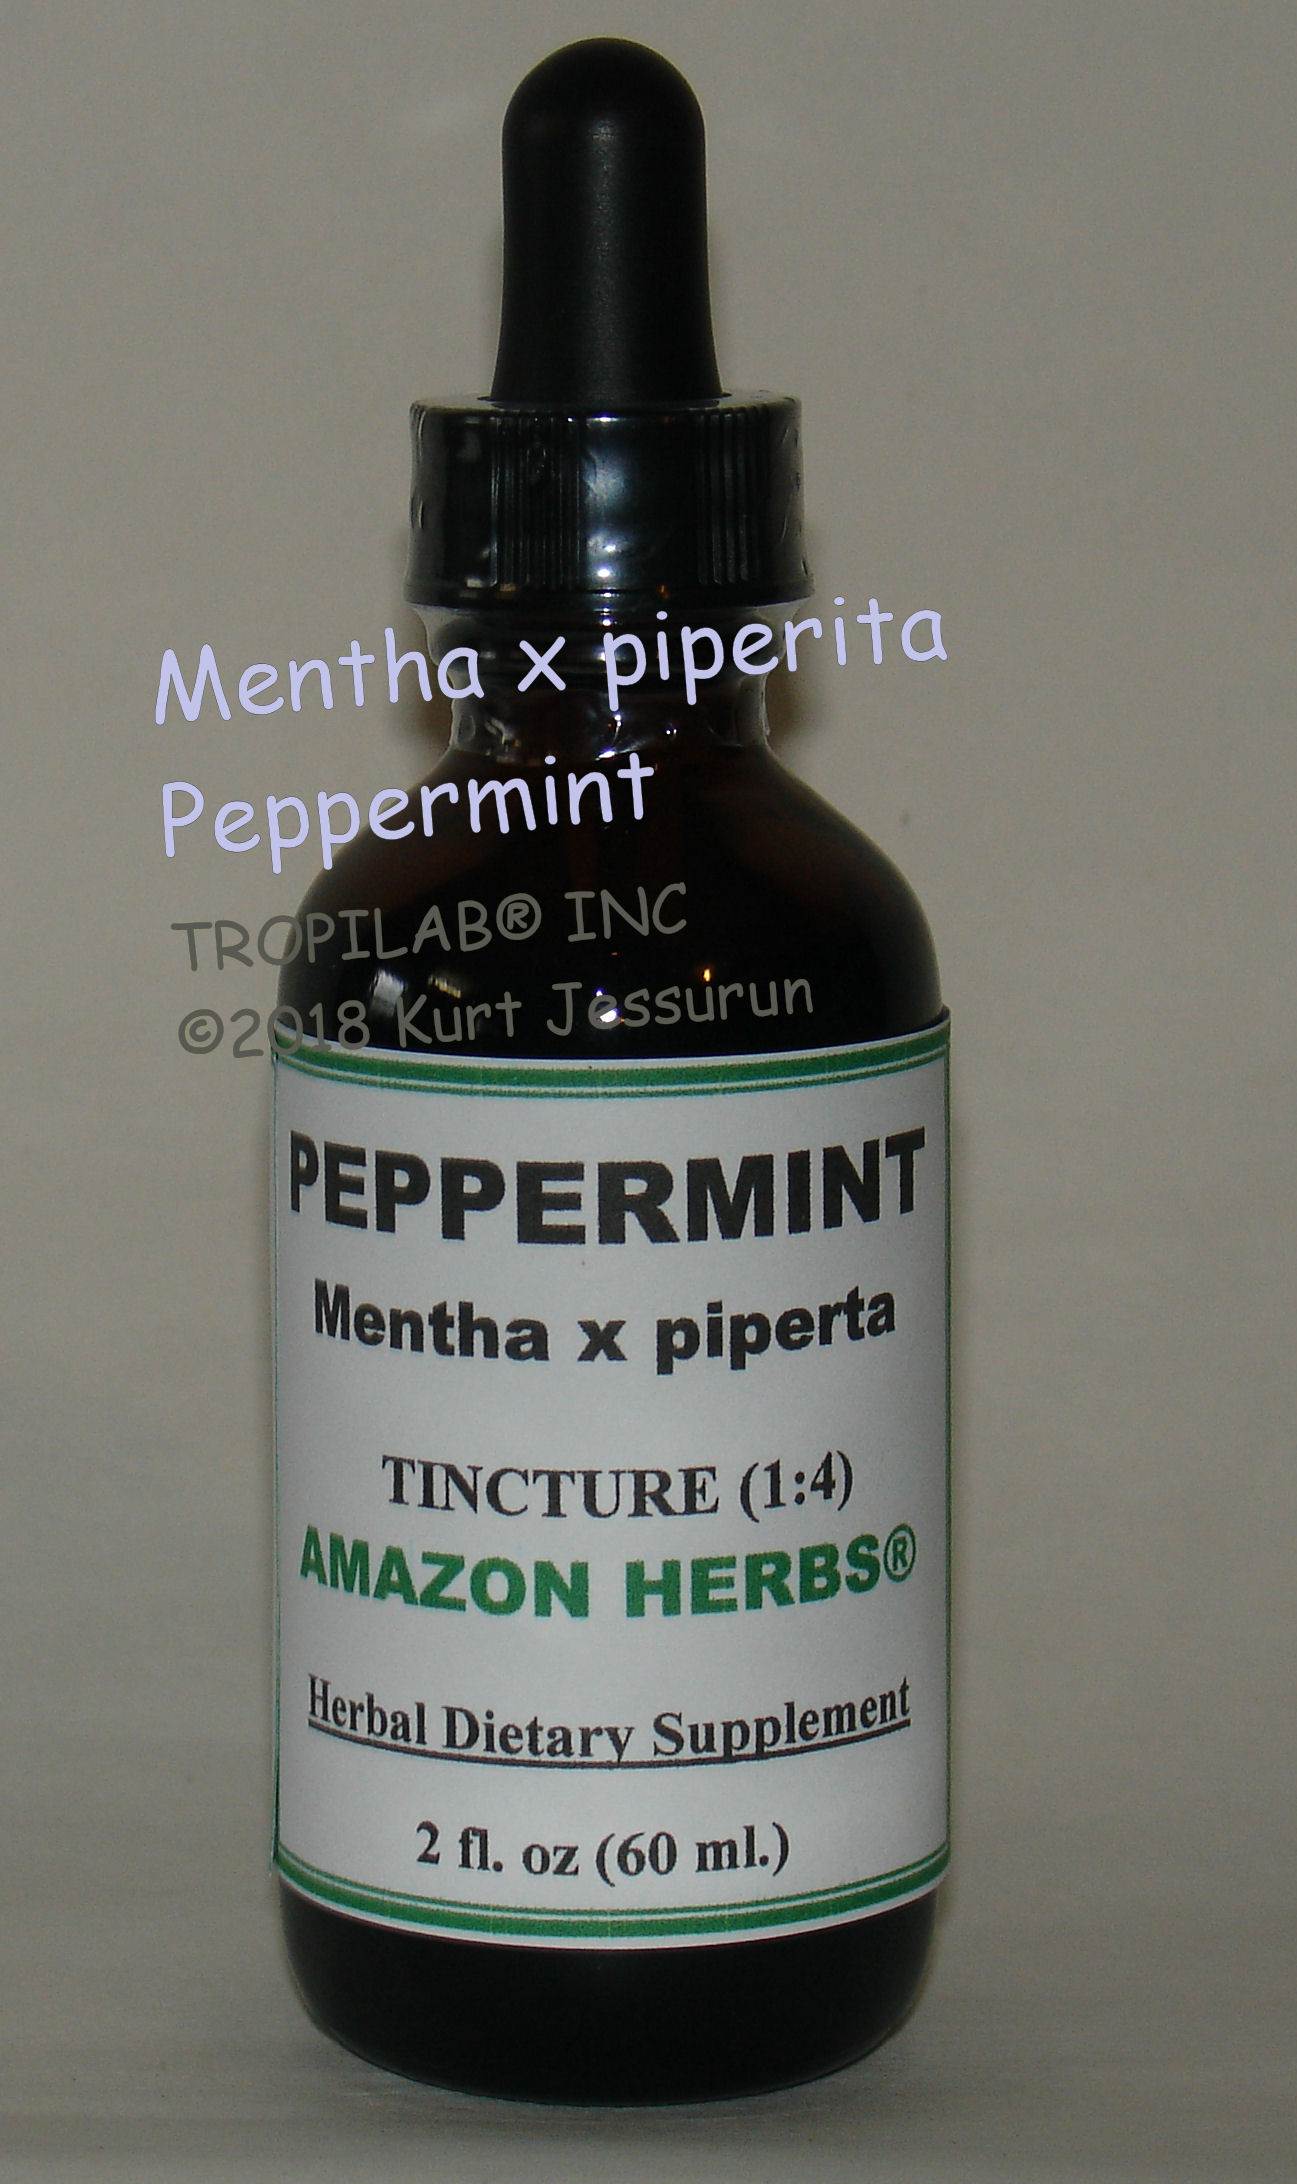 Mentha X piperita - Peppermint tincture